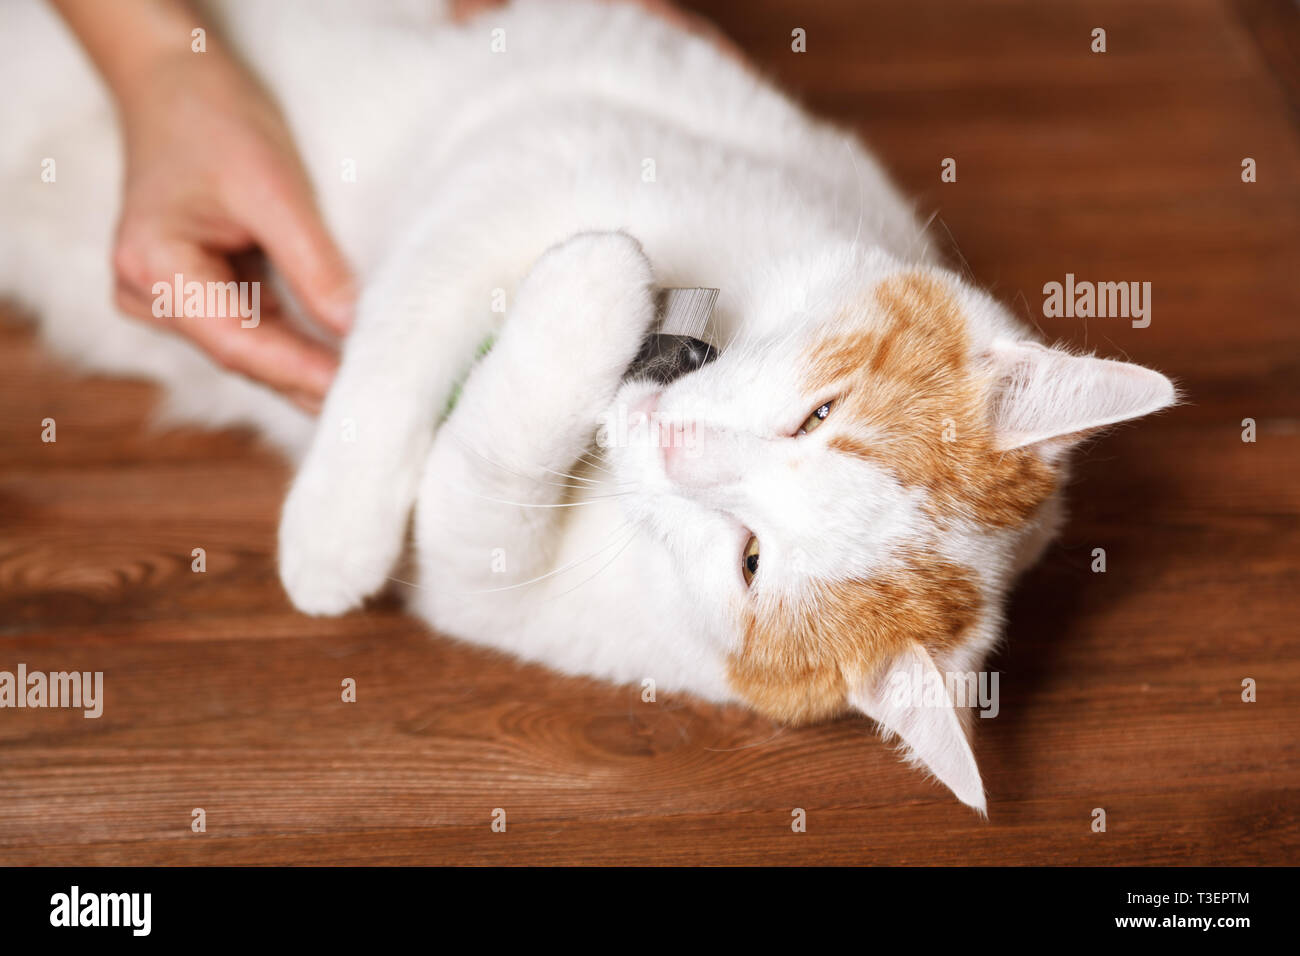 Blanco-rojo dulce cat sosteniendo un peine. Peinar los gatos domésticos. El concepto de cuidado de mascotas. Foto de stock